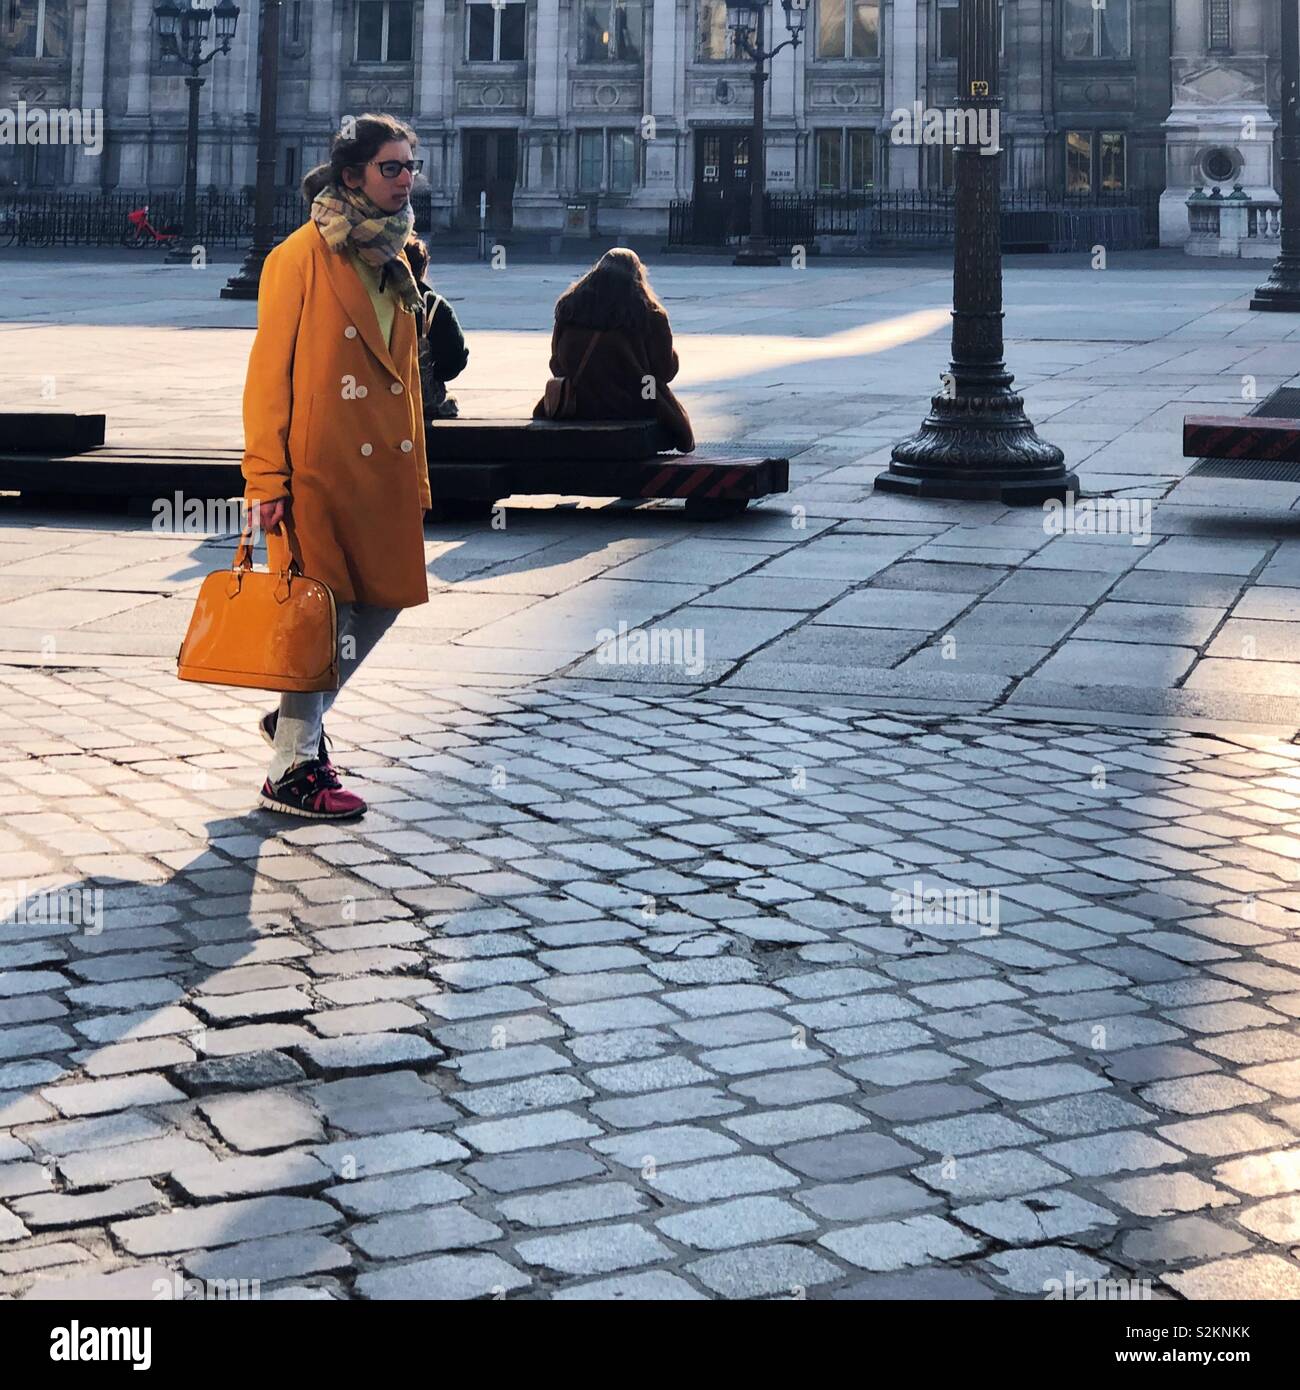 Street fashion in Paris Stock Photo